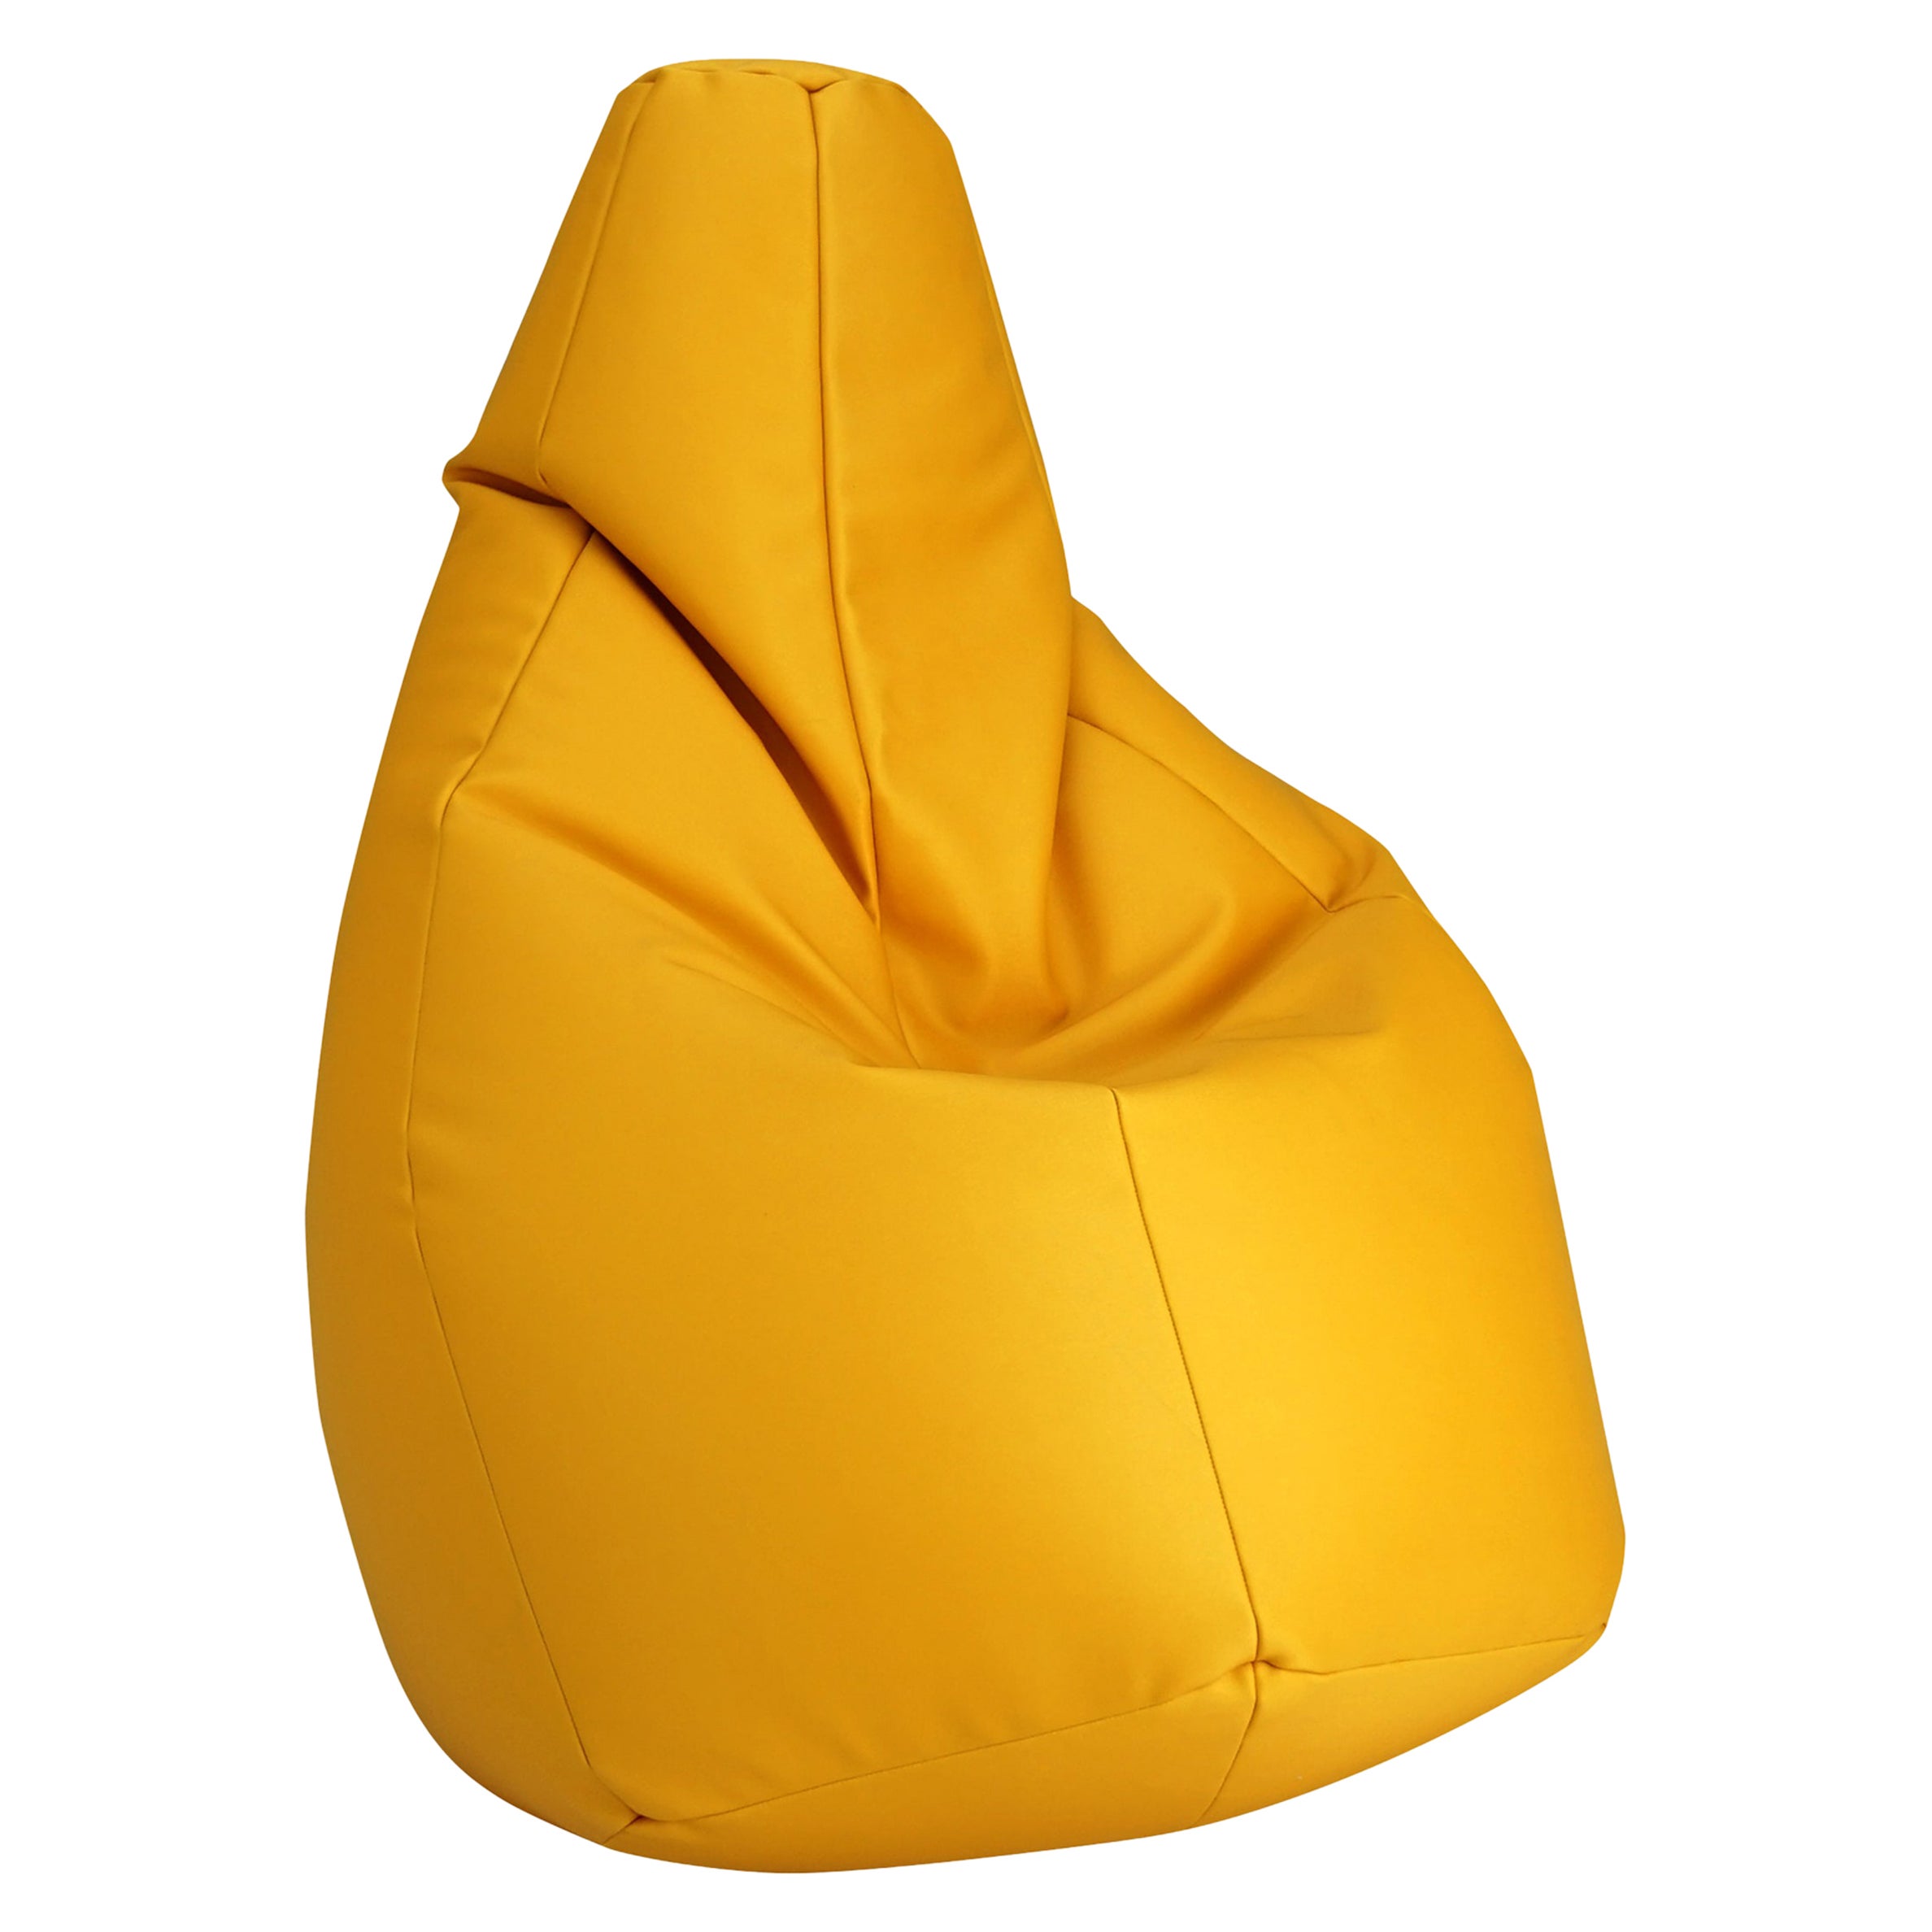 Zanotta Large Sacco in Yellow Vip Fabric by Gatti, Paolini, Teodoro For Sale